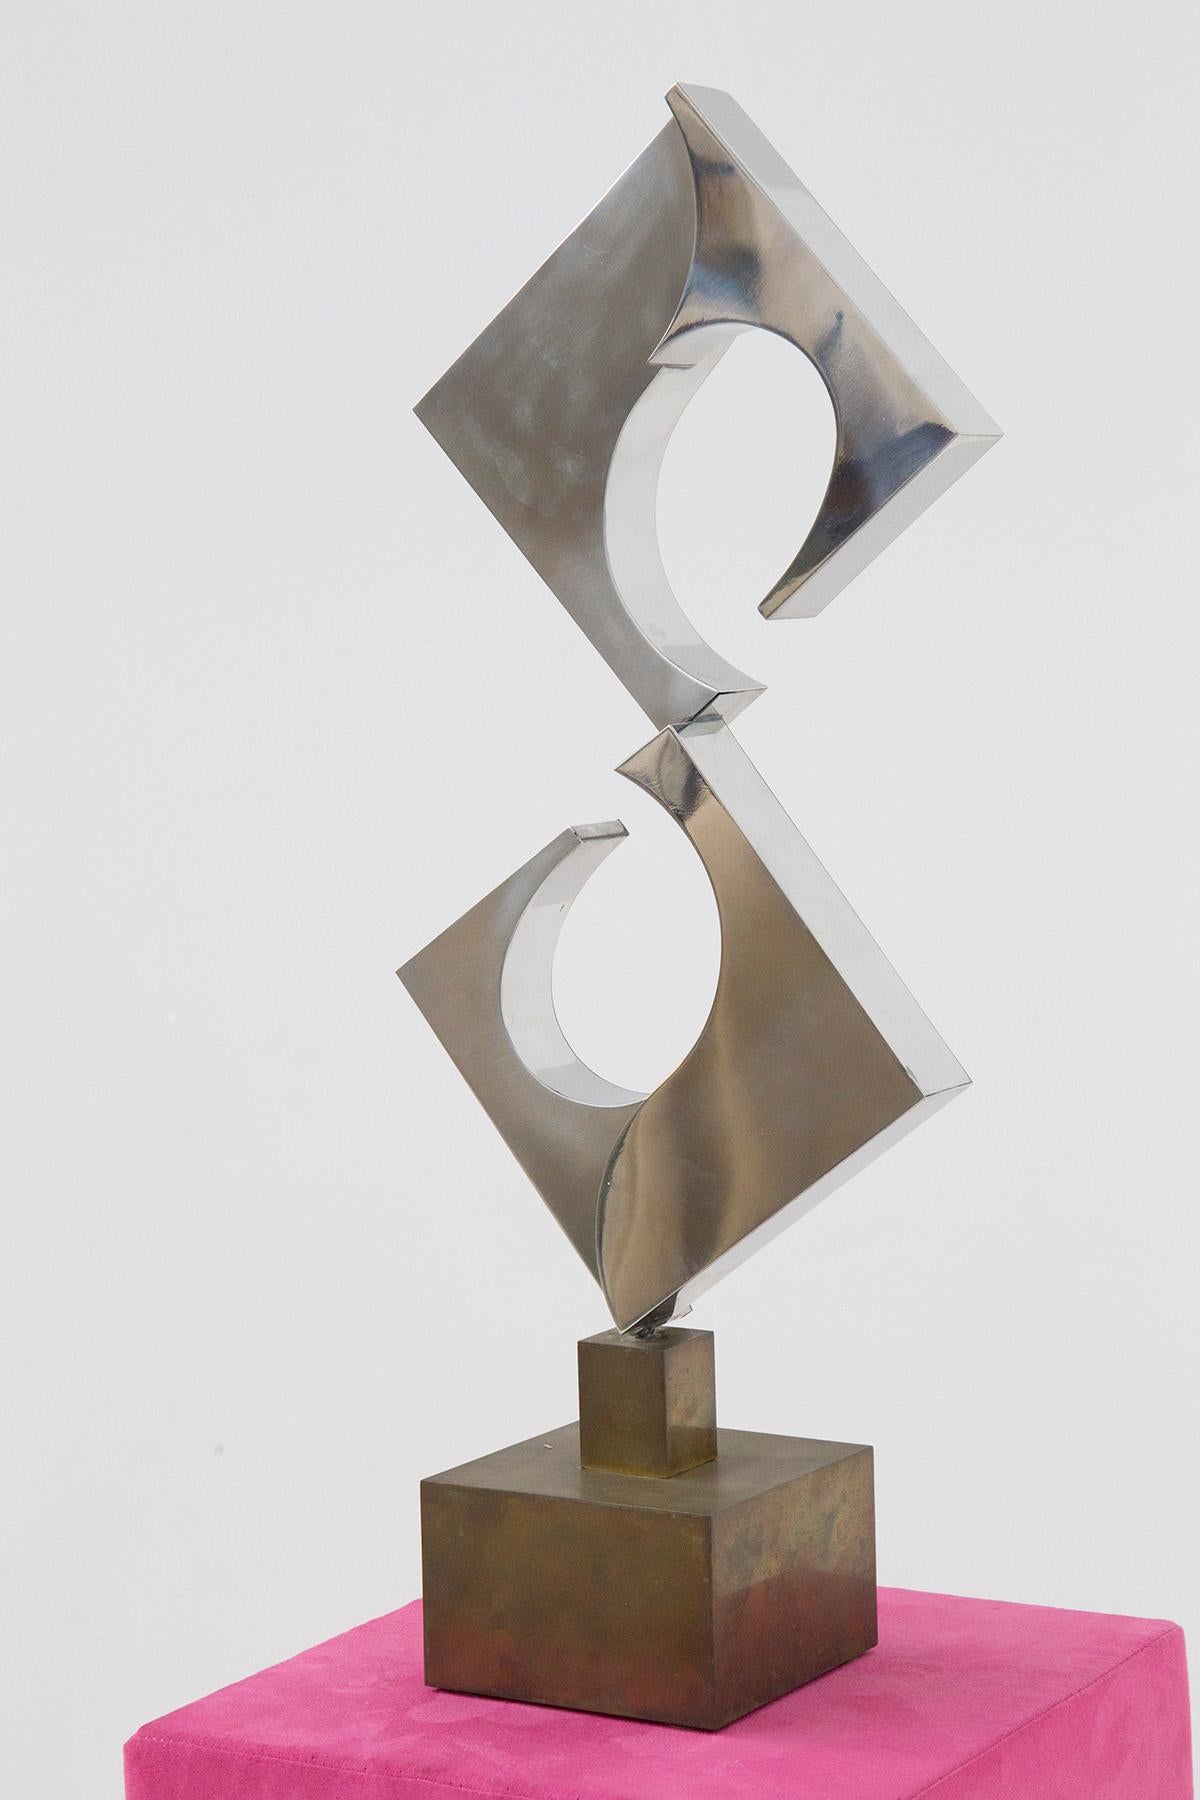 Sculpture futuriste du maître sculpteur Cappello Carmelo intitulée Spirale triangulaire. Edition 5 sur 6 de 1978, signature et année gravées sous la sculpture. L'œuvre est une représentation futuriste de la sculpture architecturale. Les formes sont